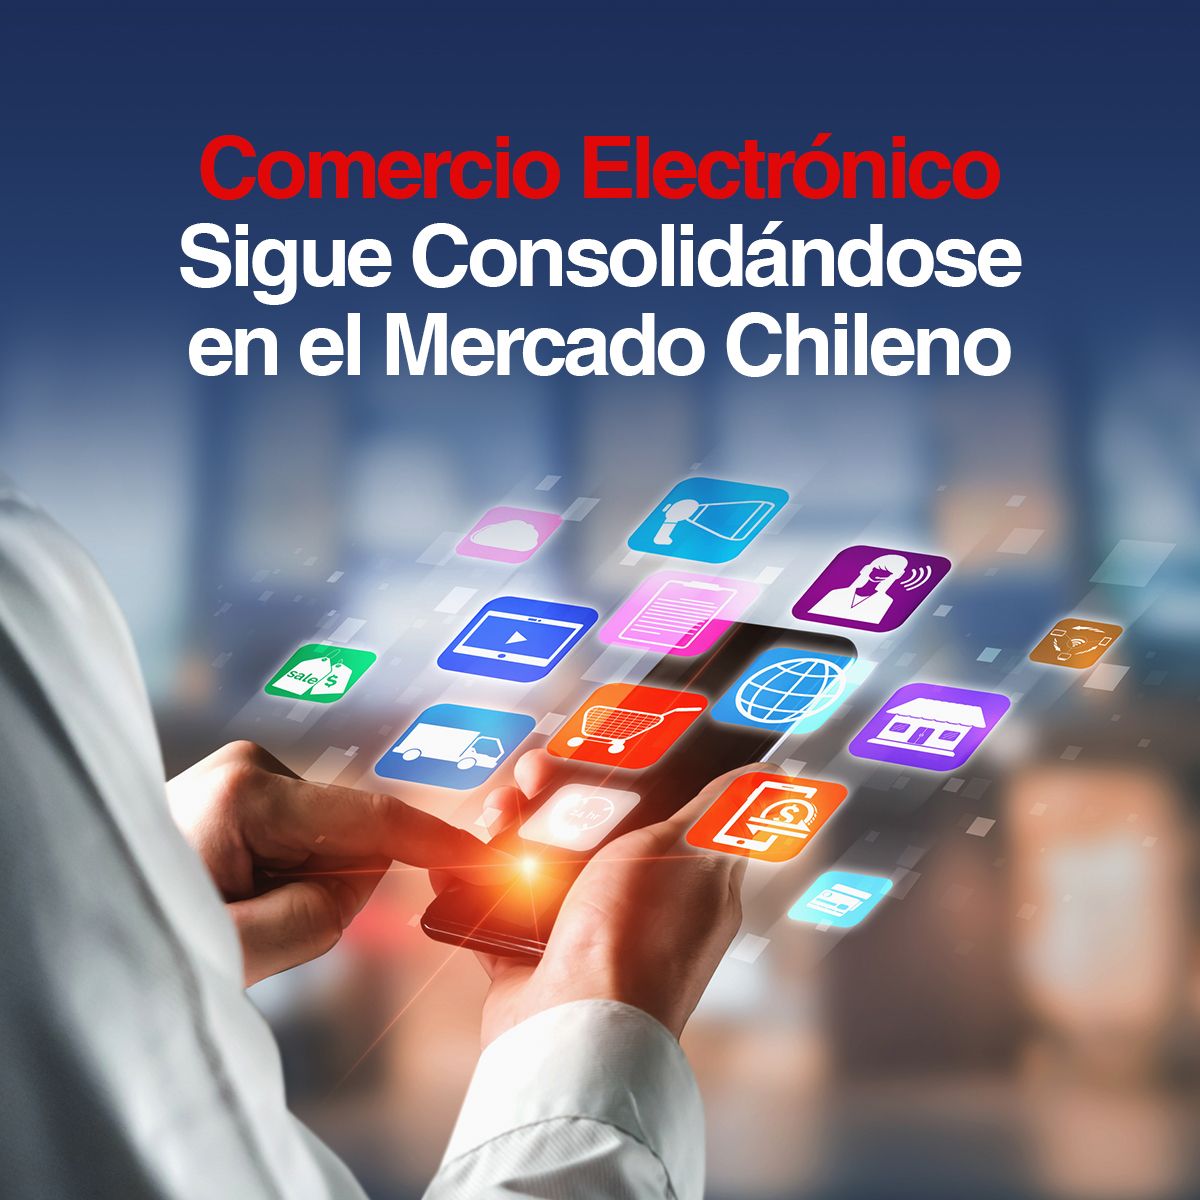 Comercio Electrónico Sigue Consolidándose en el Mercado Chileno